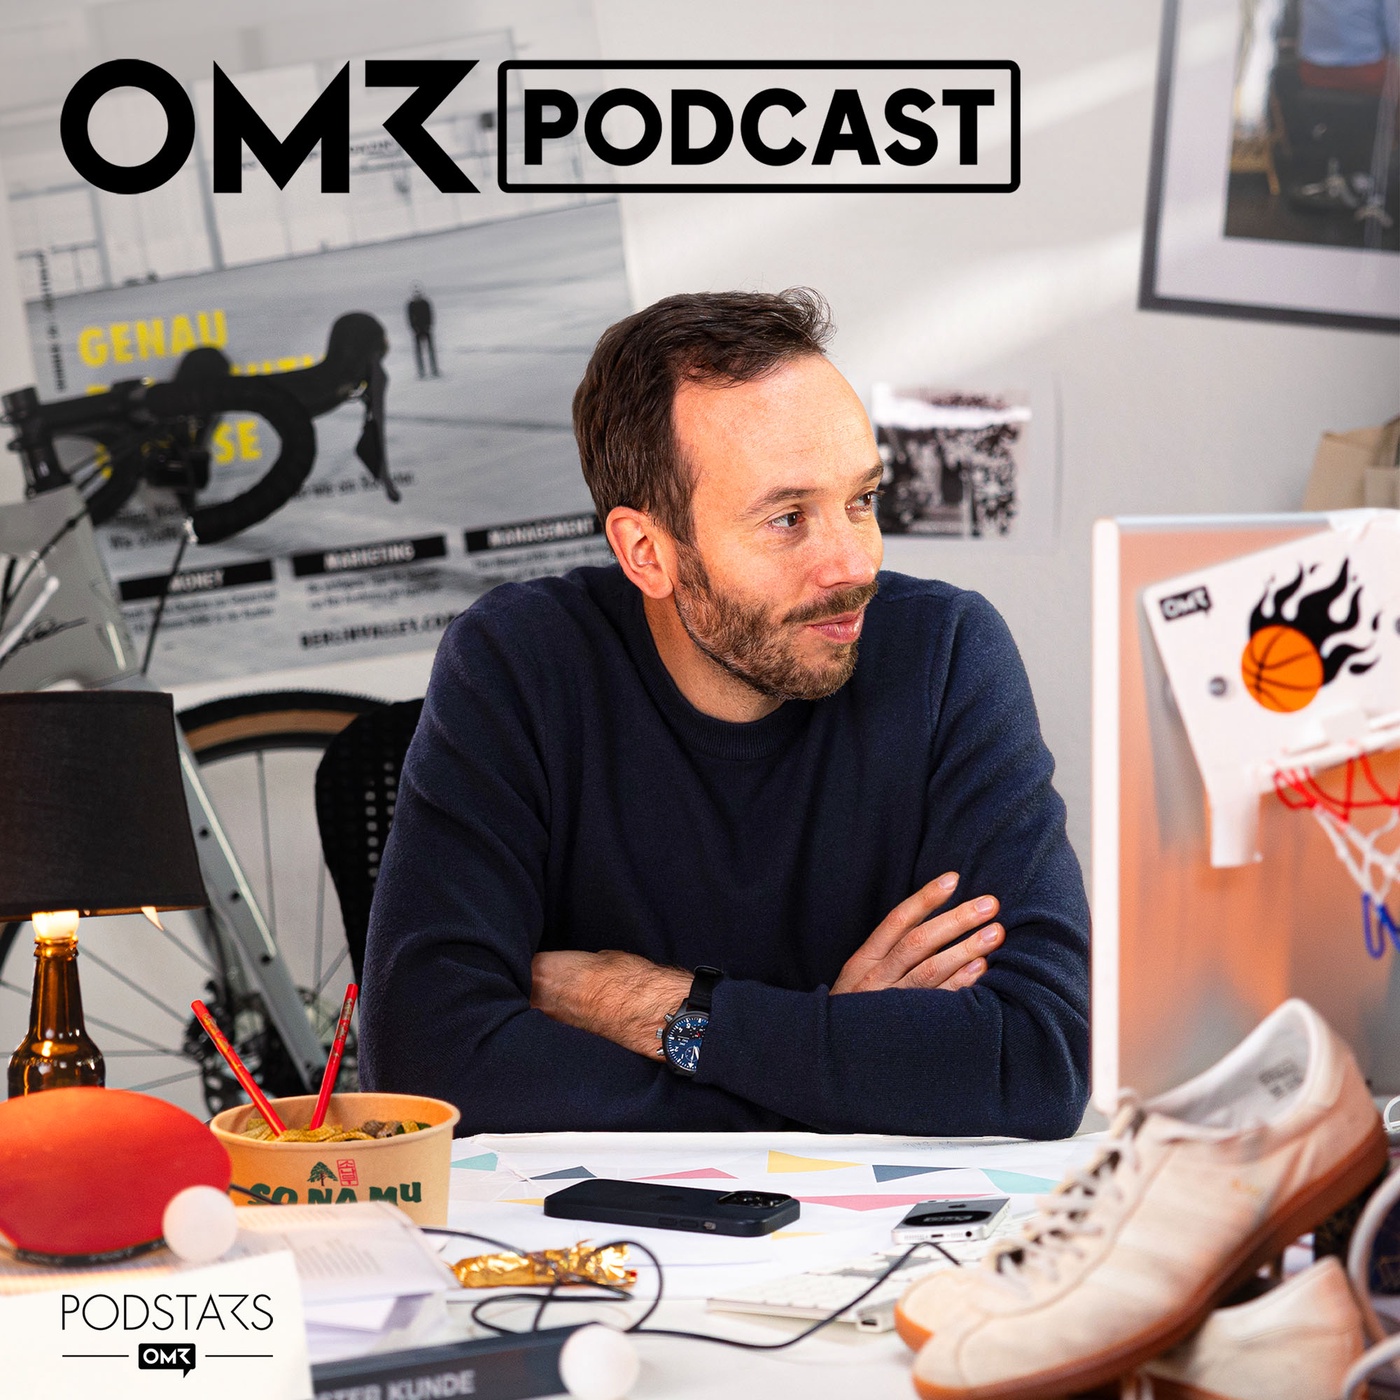 OMR Podcast